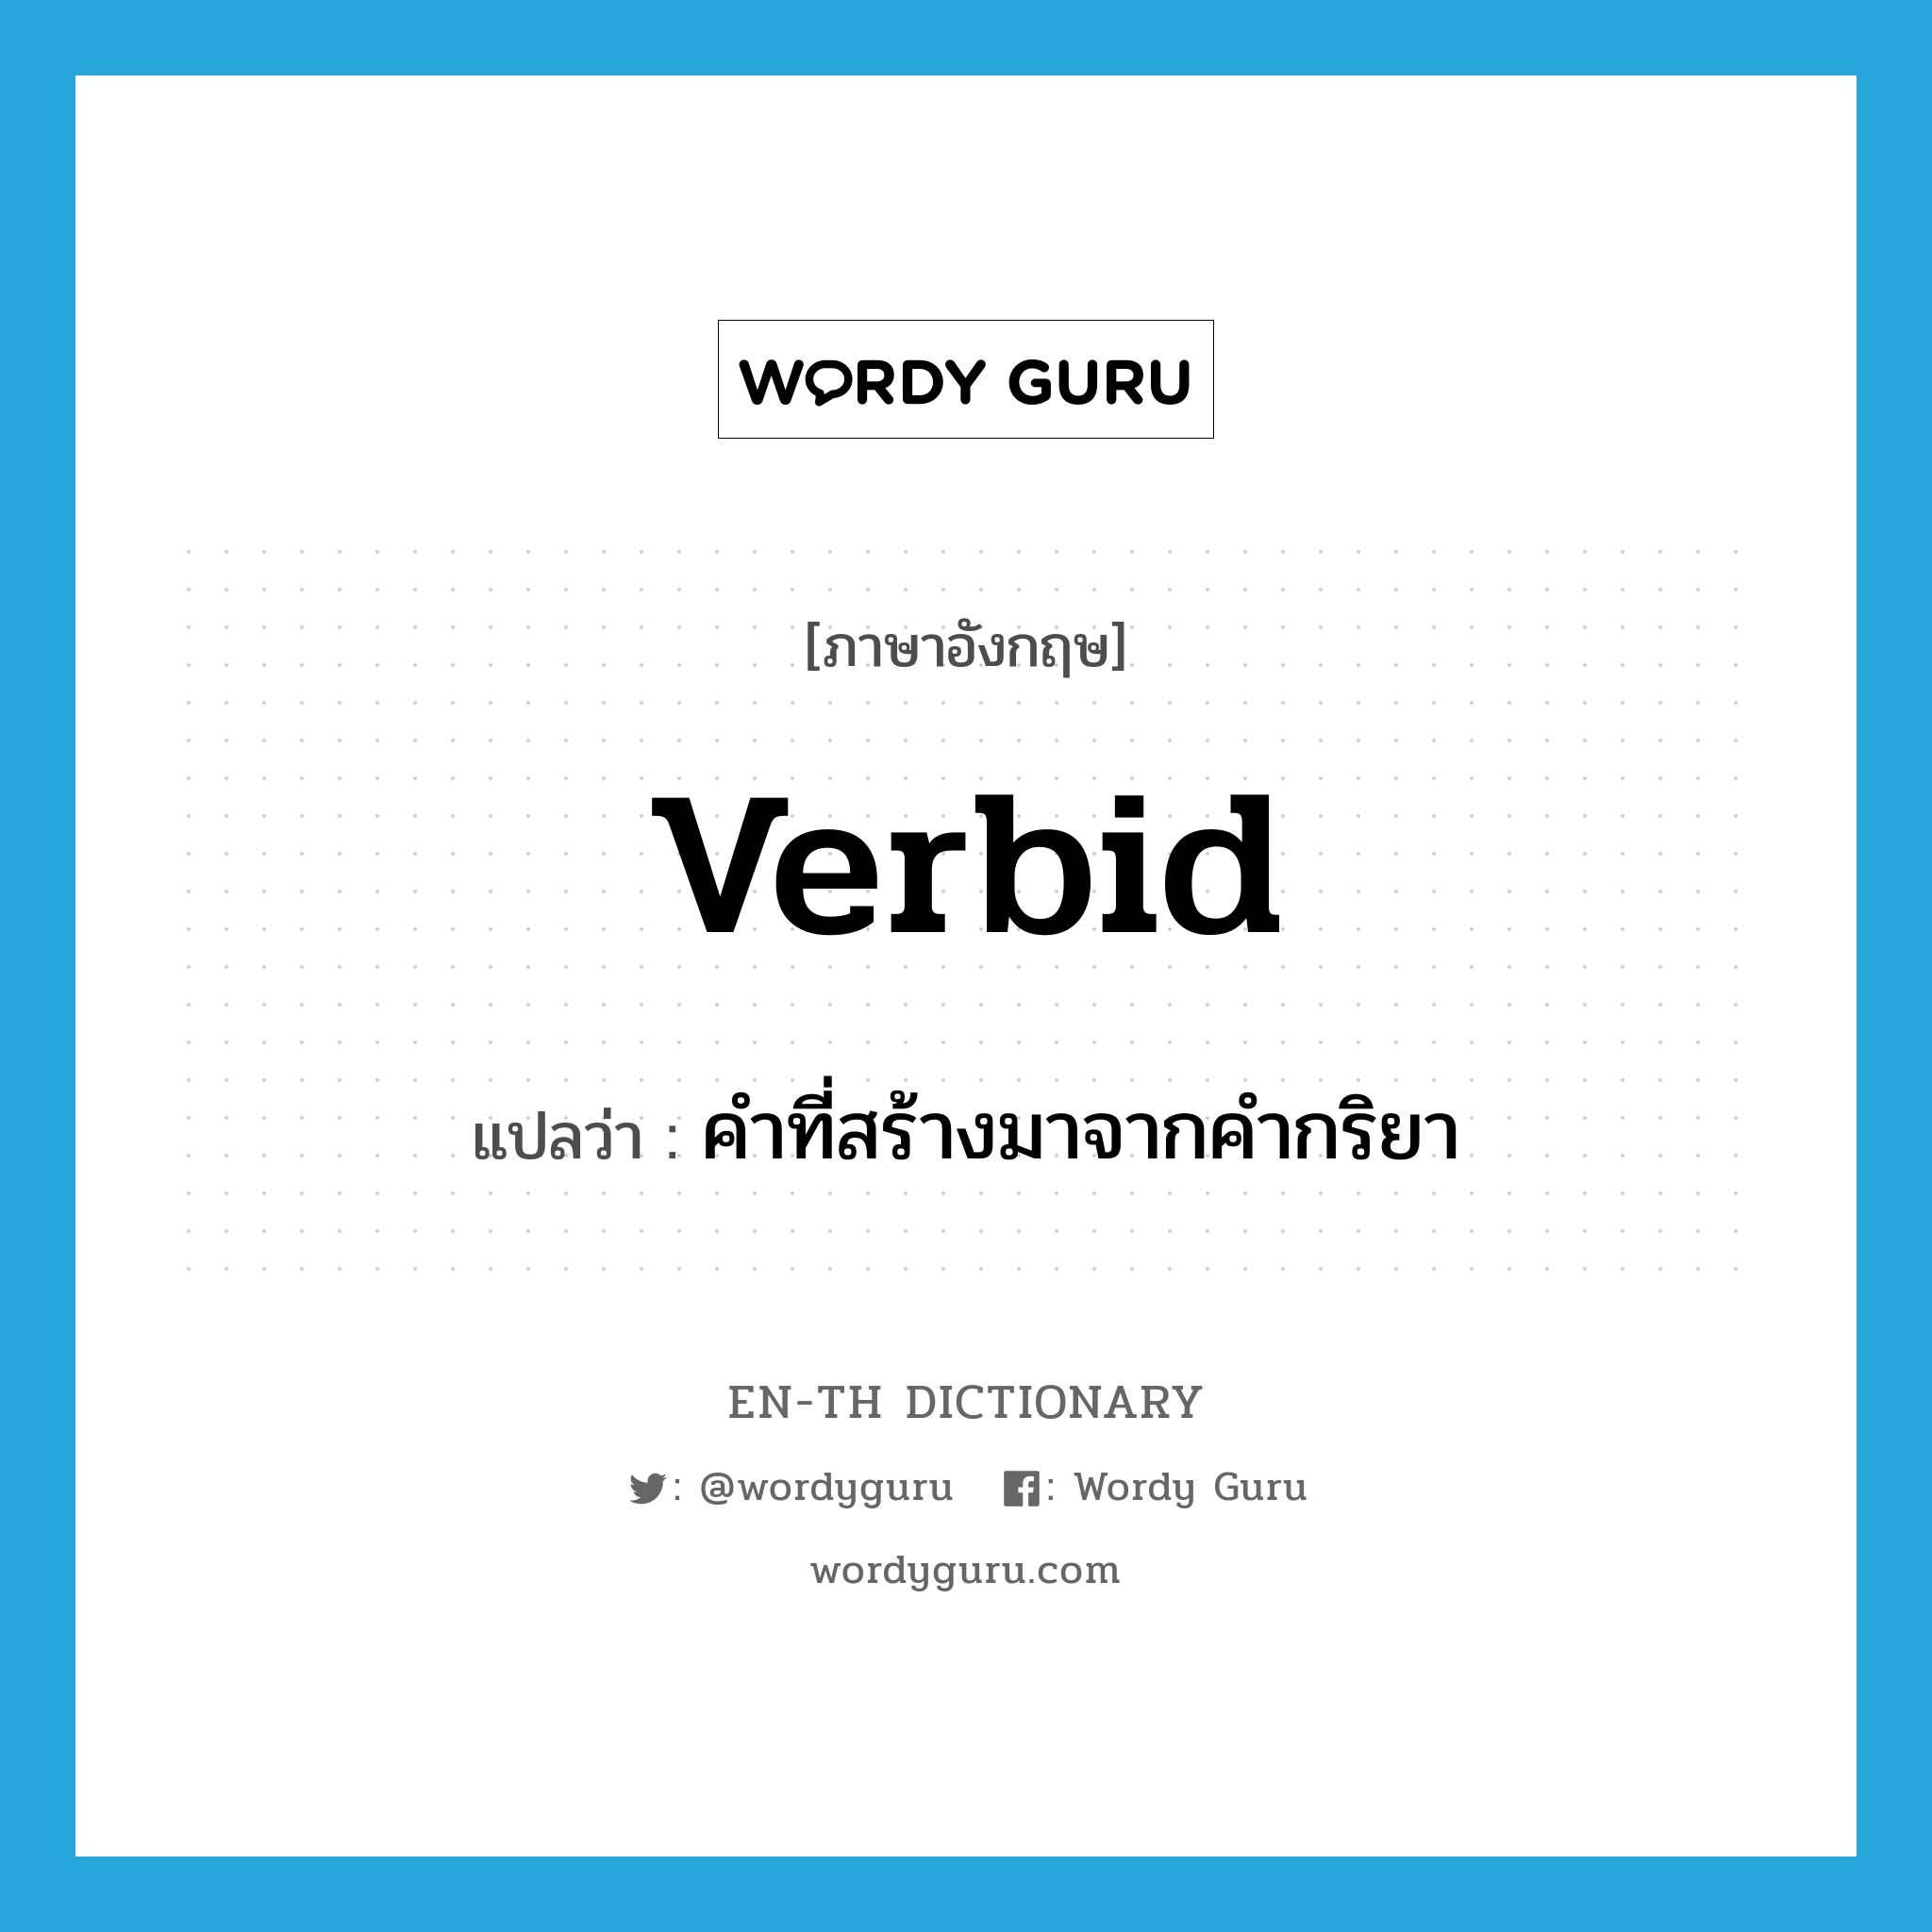 คำที่สร้างมาจากคำกริยา ภาษาอังกฤษ?, คำศัพท์ภาษาอังกฤษ คำที่สร้างมาจากคำกริยา แปลว่า verbid ประเภท N หมวด N